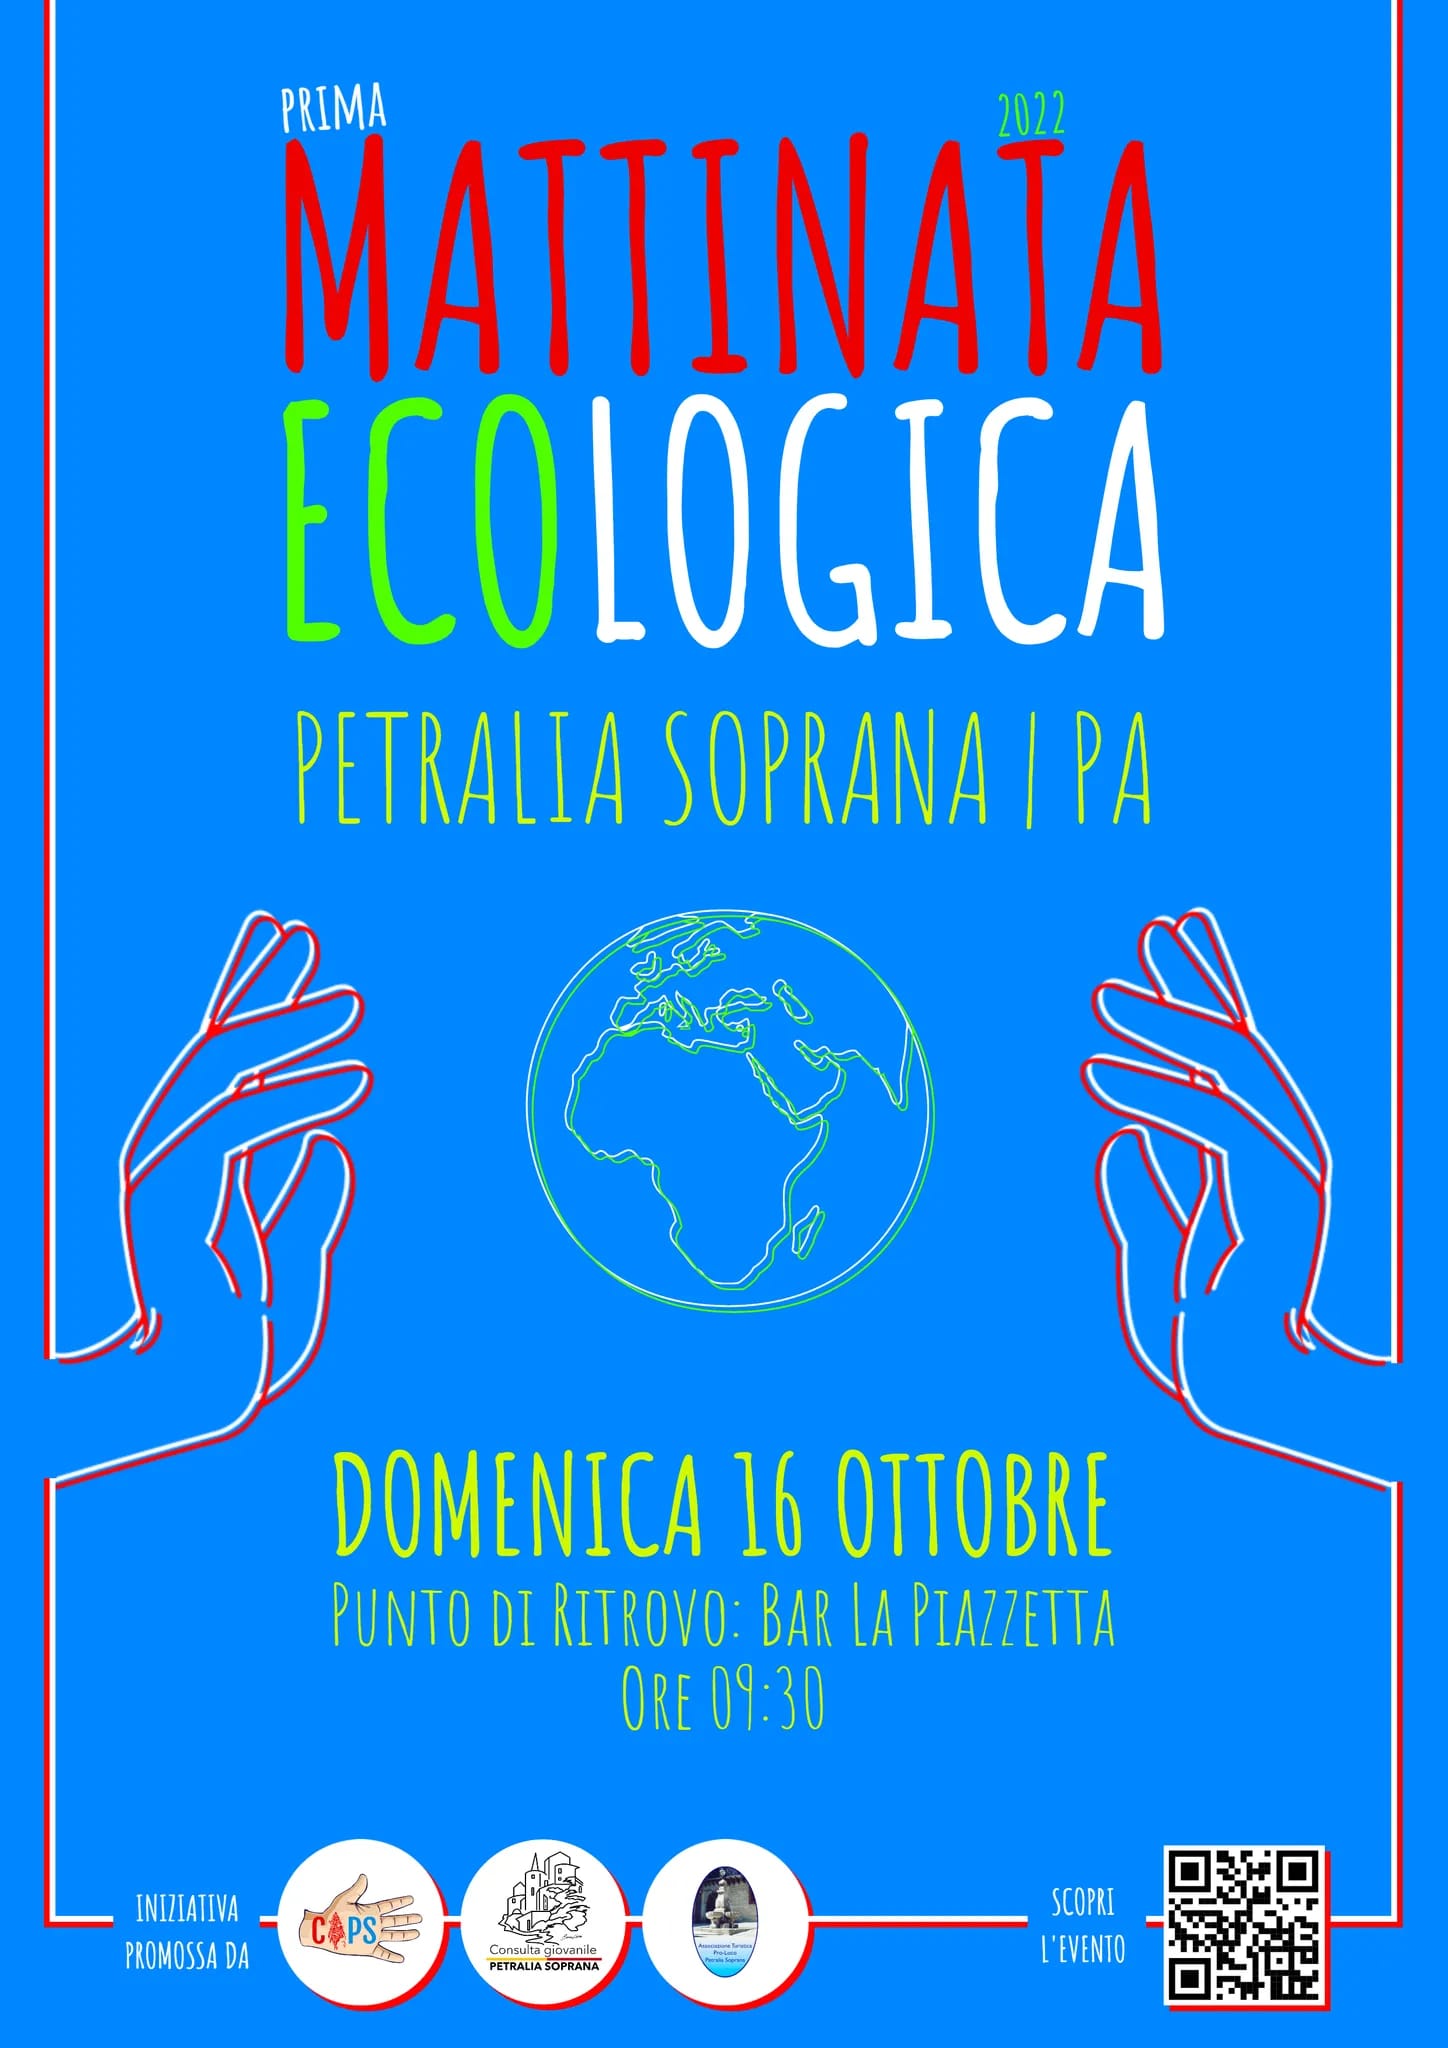 Prima Mattinata Ecologica 2022